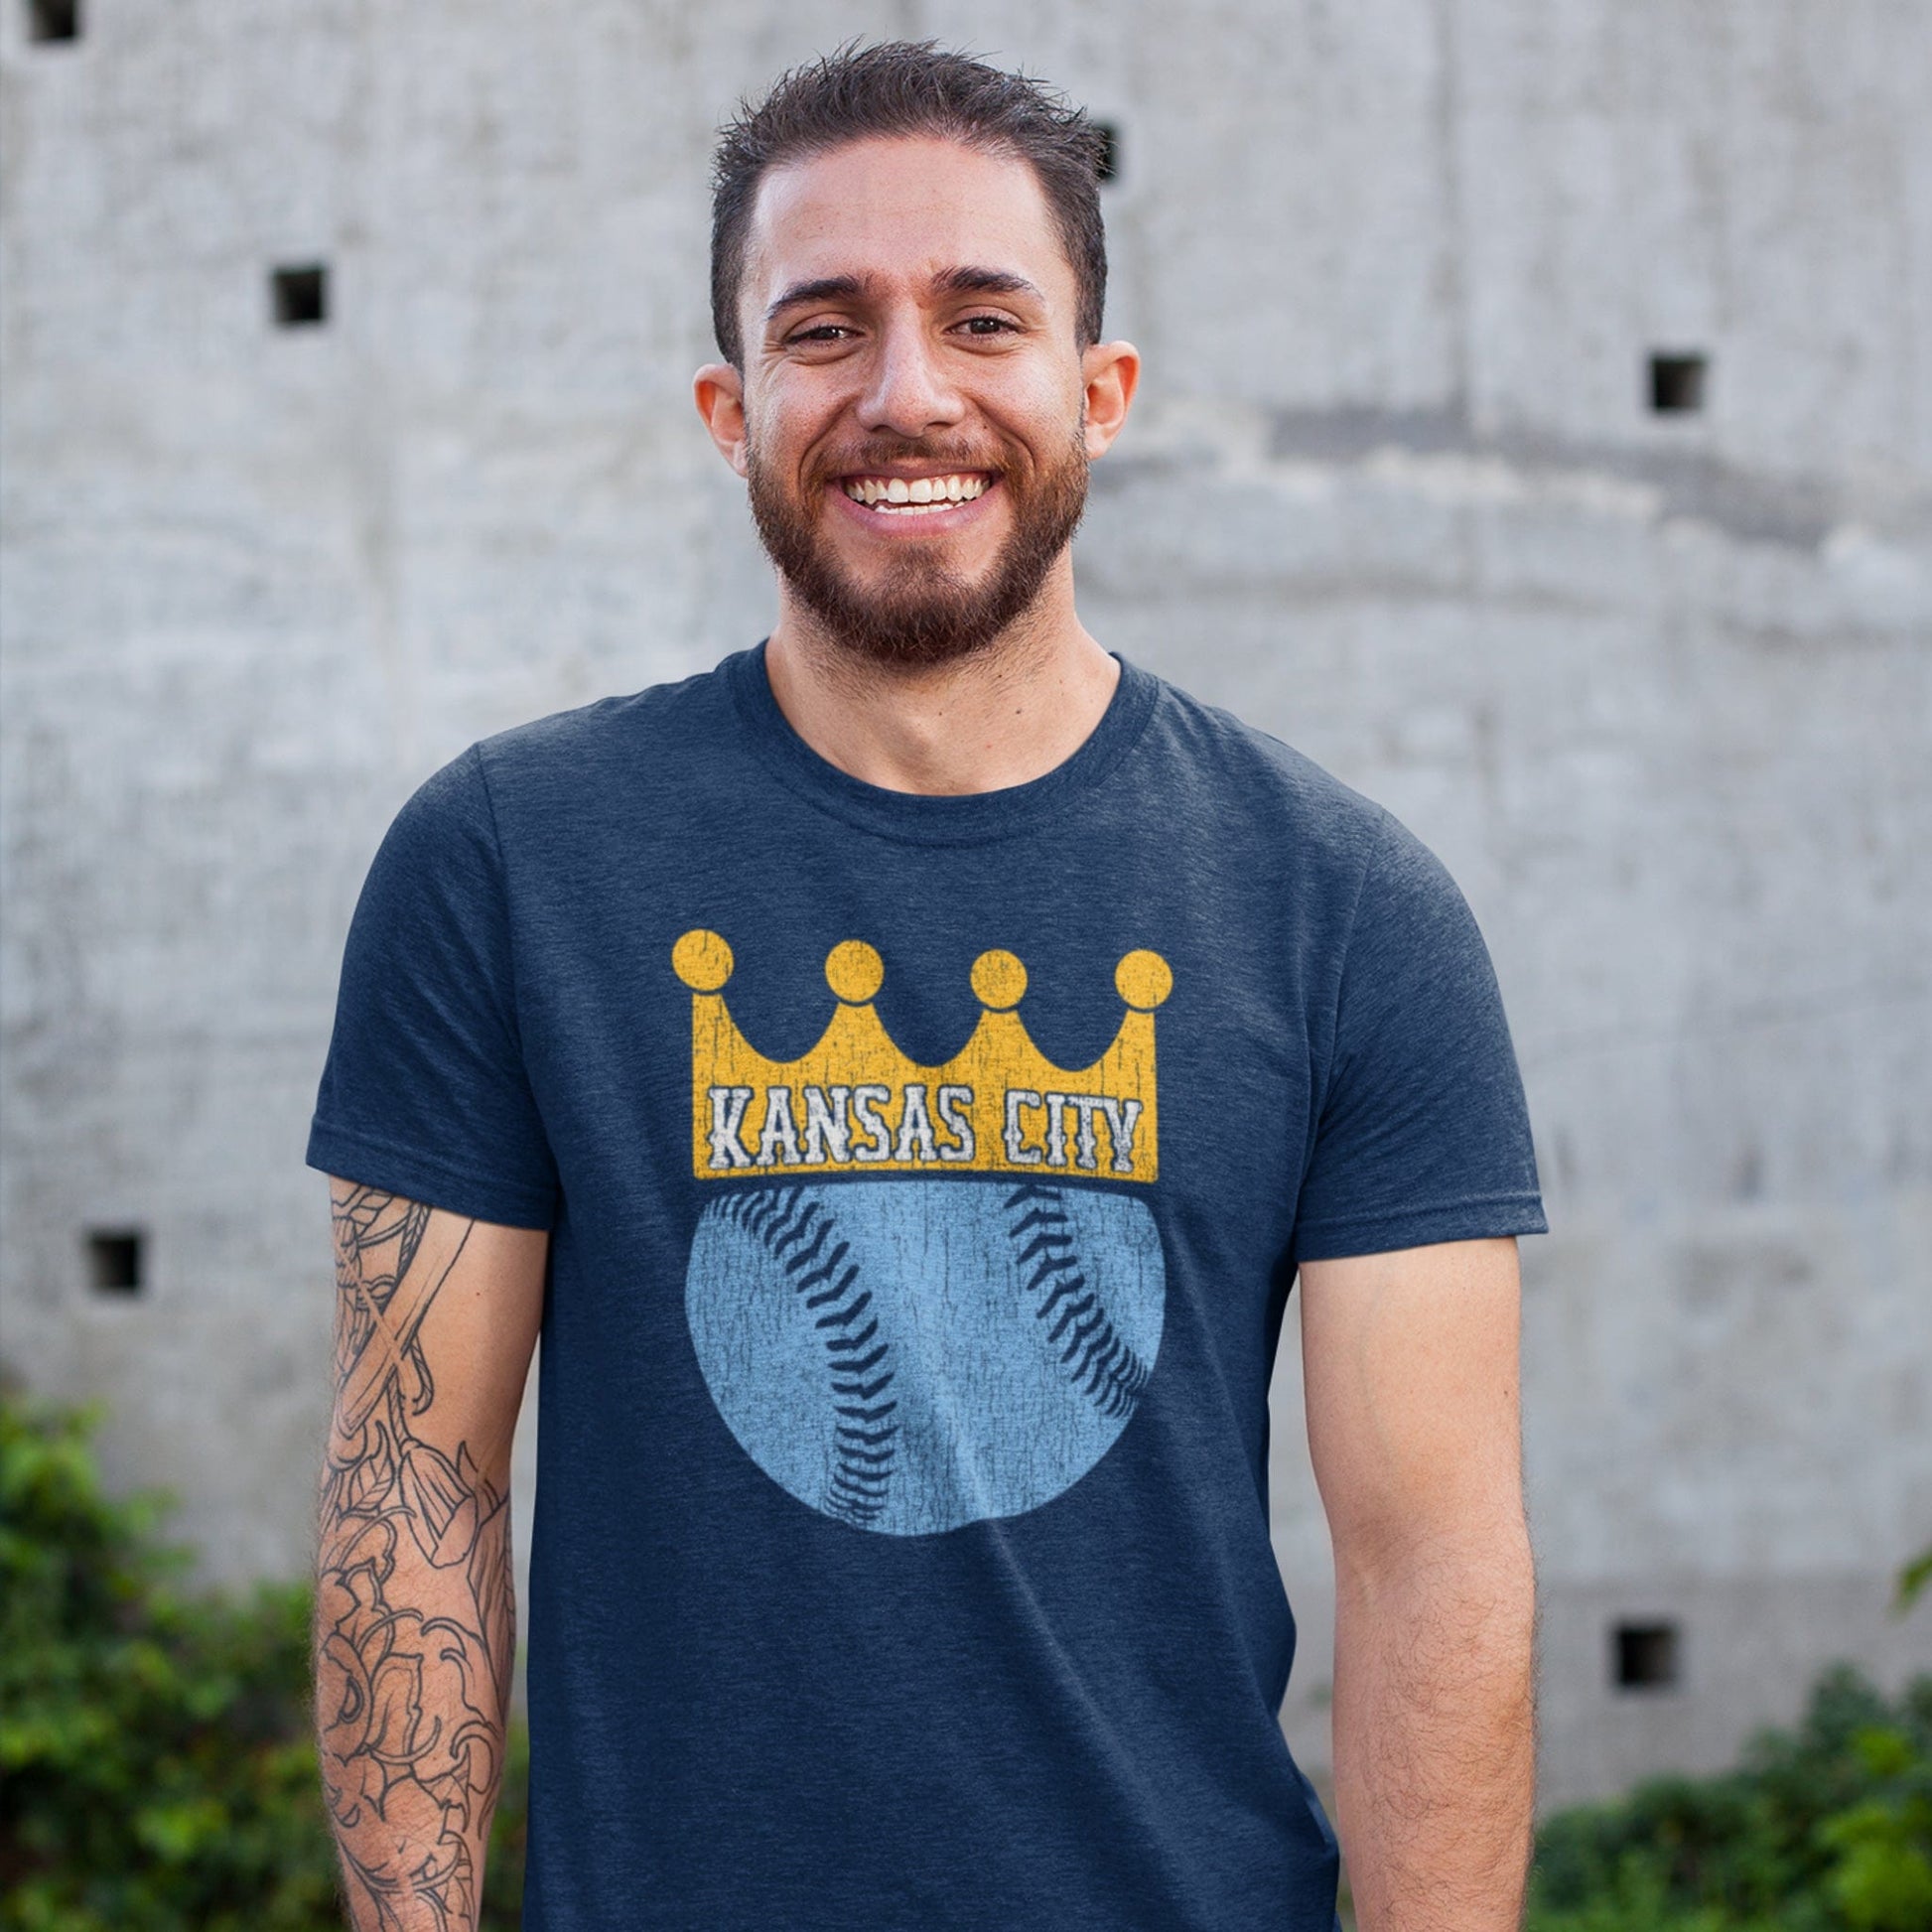 Royals Crown - Kansas City Royals T-Shirt